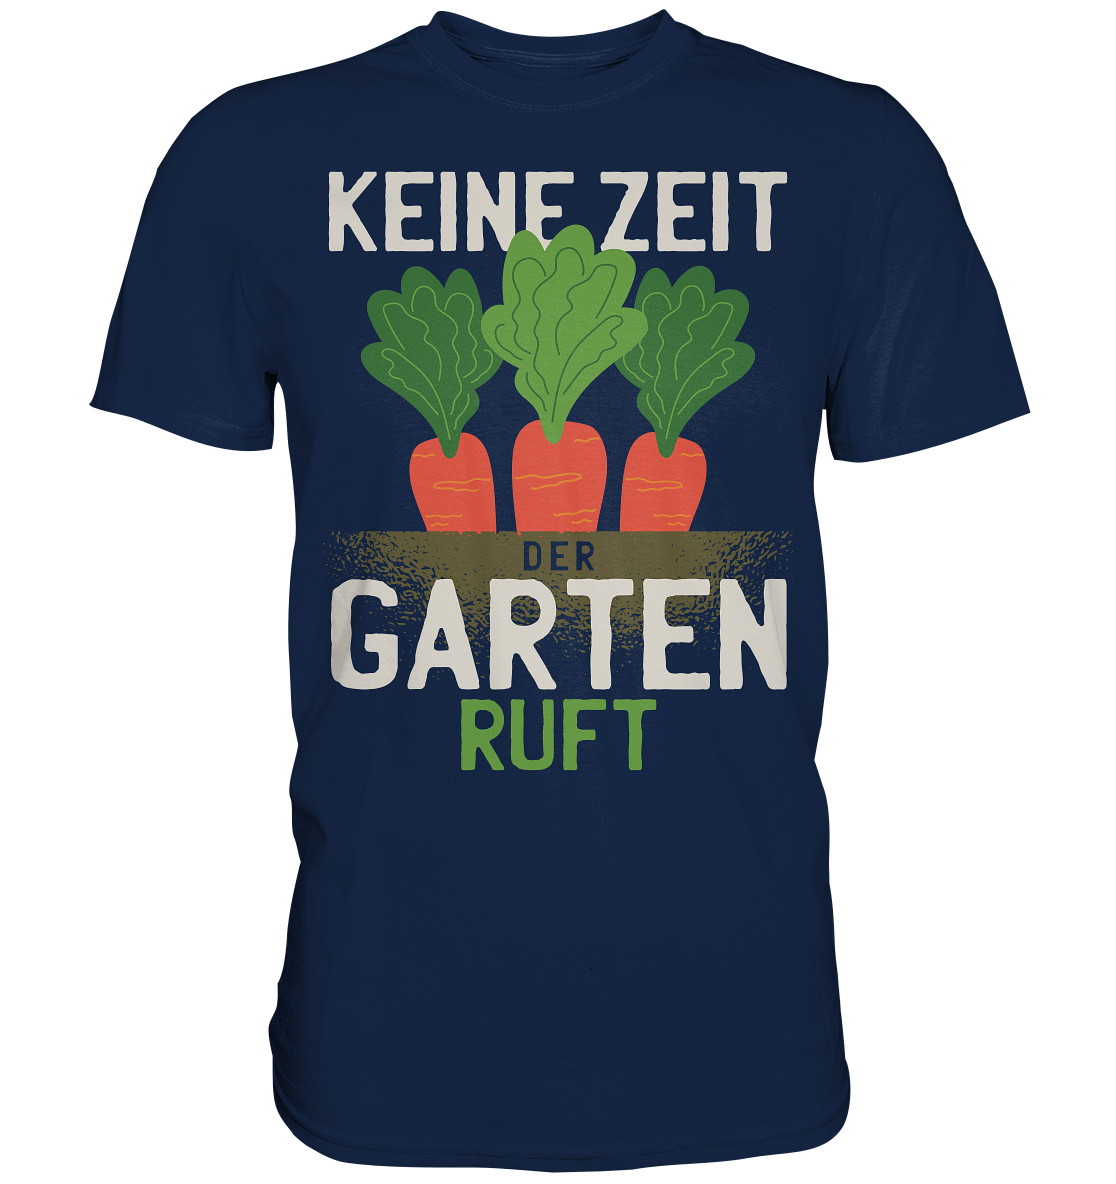 Keine Zeit der Garten ruft - Classic Shirt - Online Kaufhaus München